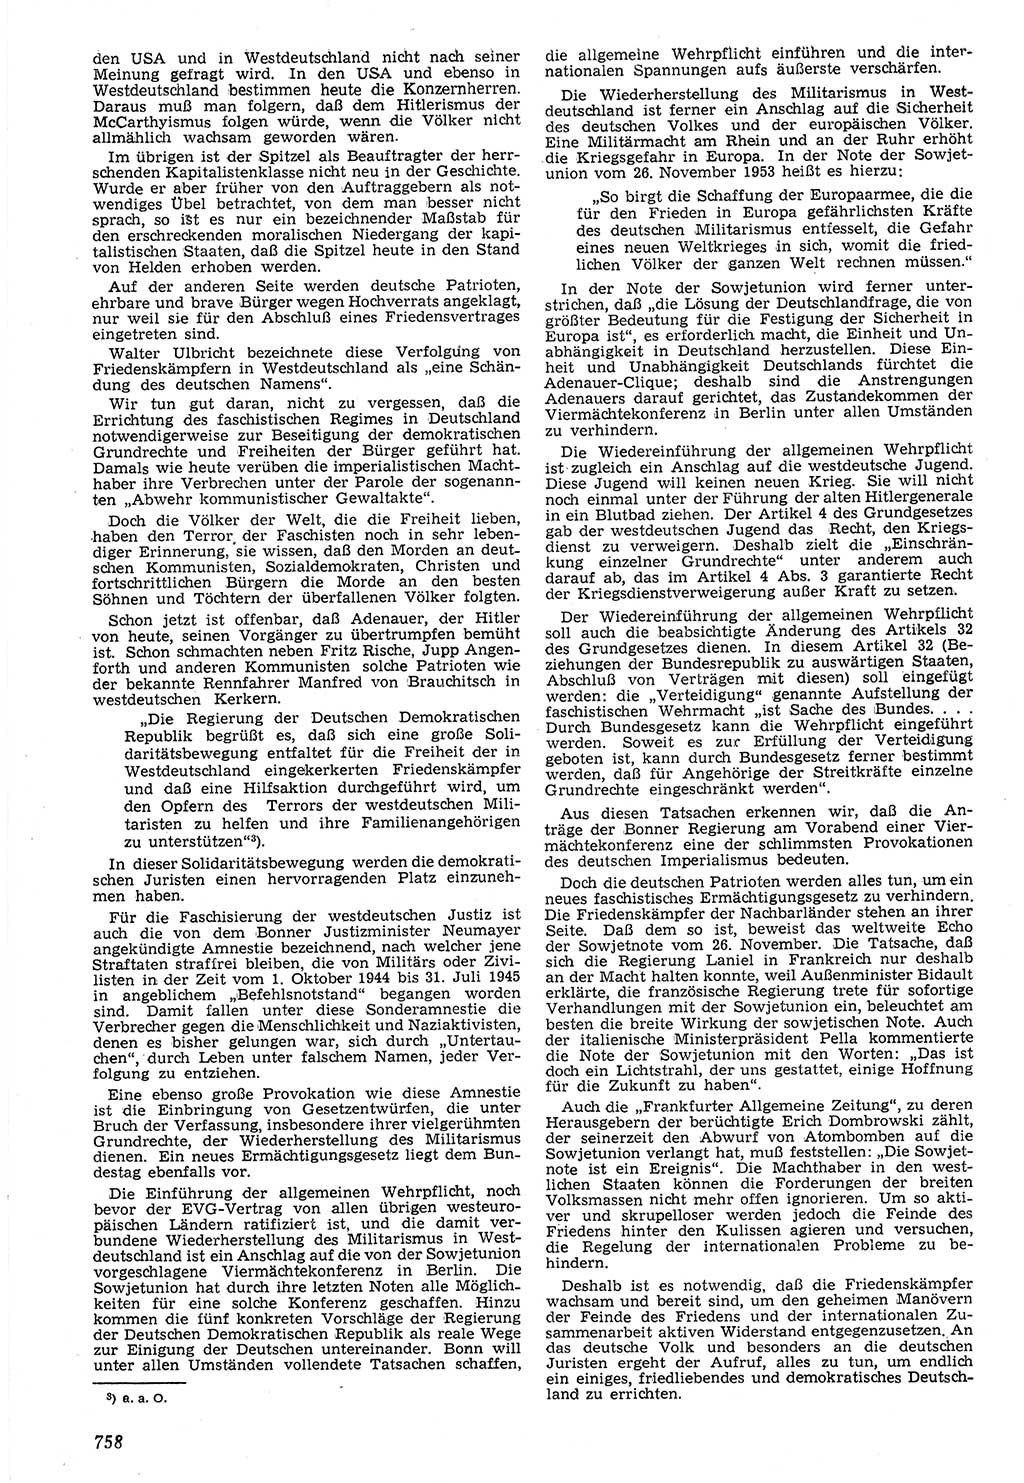 Neue Justiz (NJ), Zeitschrift für Recht und Rechtswissenschaft [Deutsche Demokratische Republik (DDR)], 7. Jahrgang 1953, Seite 758 (NJ DDR 1953, S. 758)